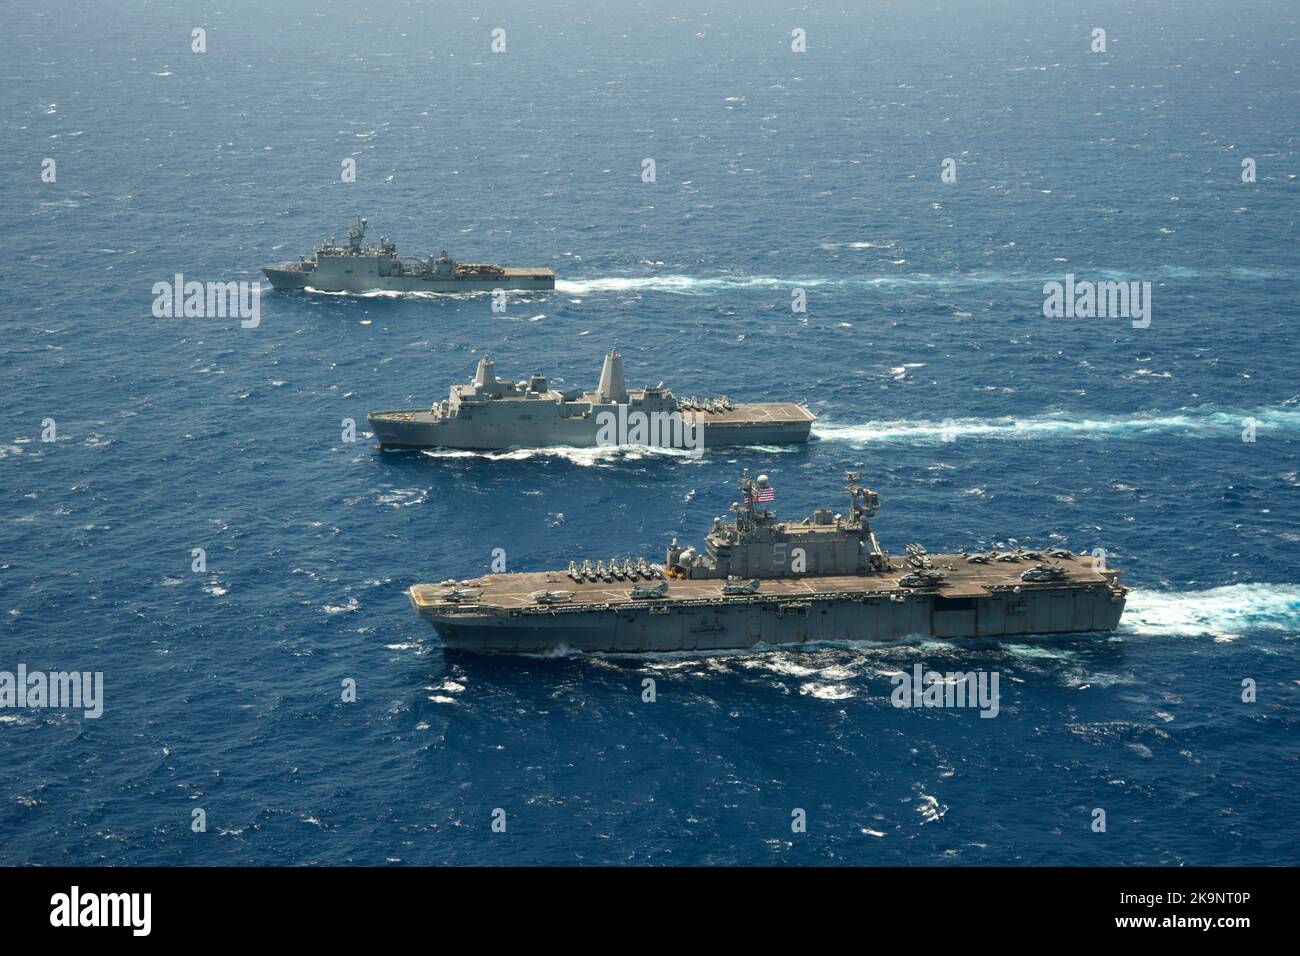 Le navire d'assaut amphibie USS Peliu (LHA 5) transite l'océan Pacifique avec le navire de quai de transport amphibie USS Green Bay (LPD 20), Middle, et le navire d'atterrissage amphibie USS Rushmore (LSD 47). Banque D'Images